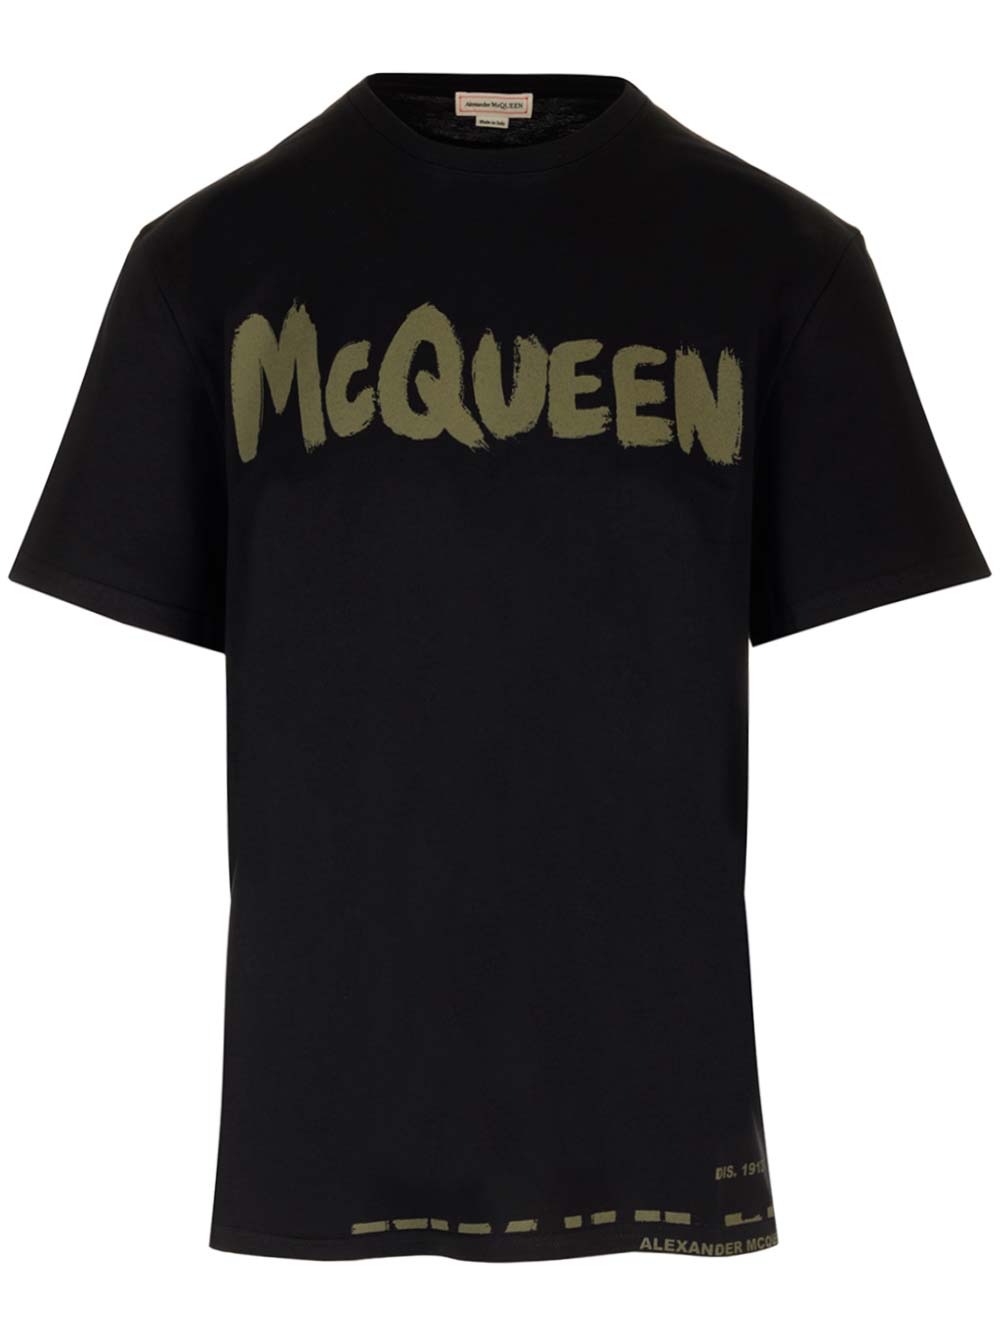 Alexander Mcqueen Black T-shirt